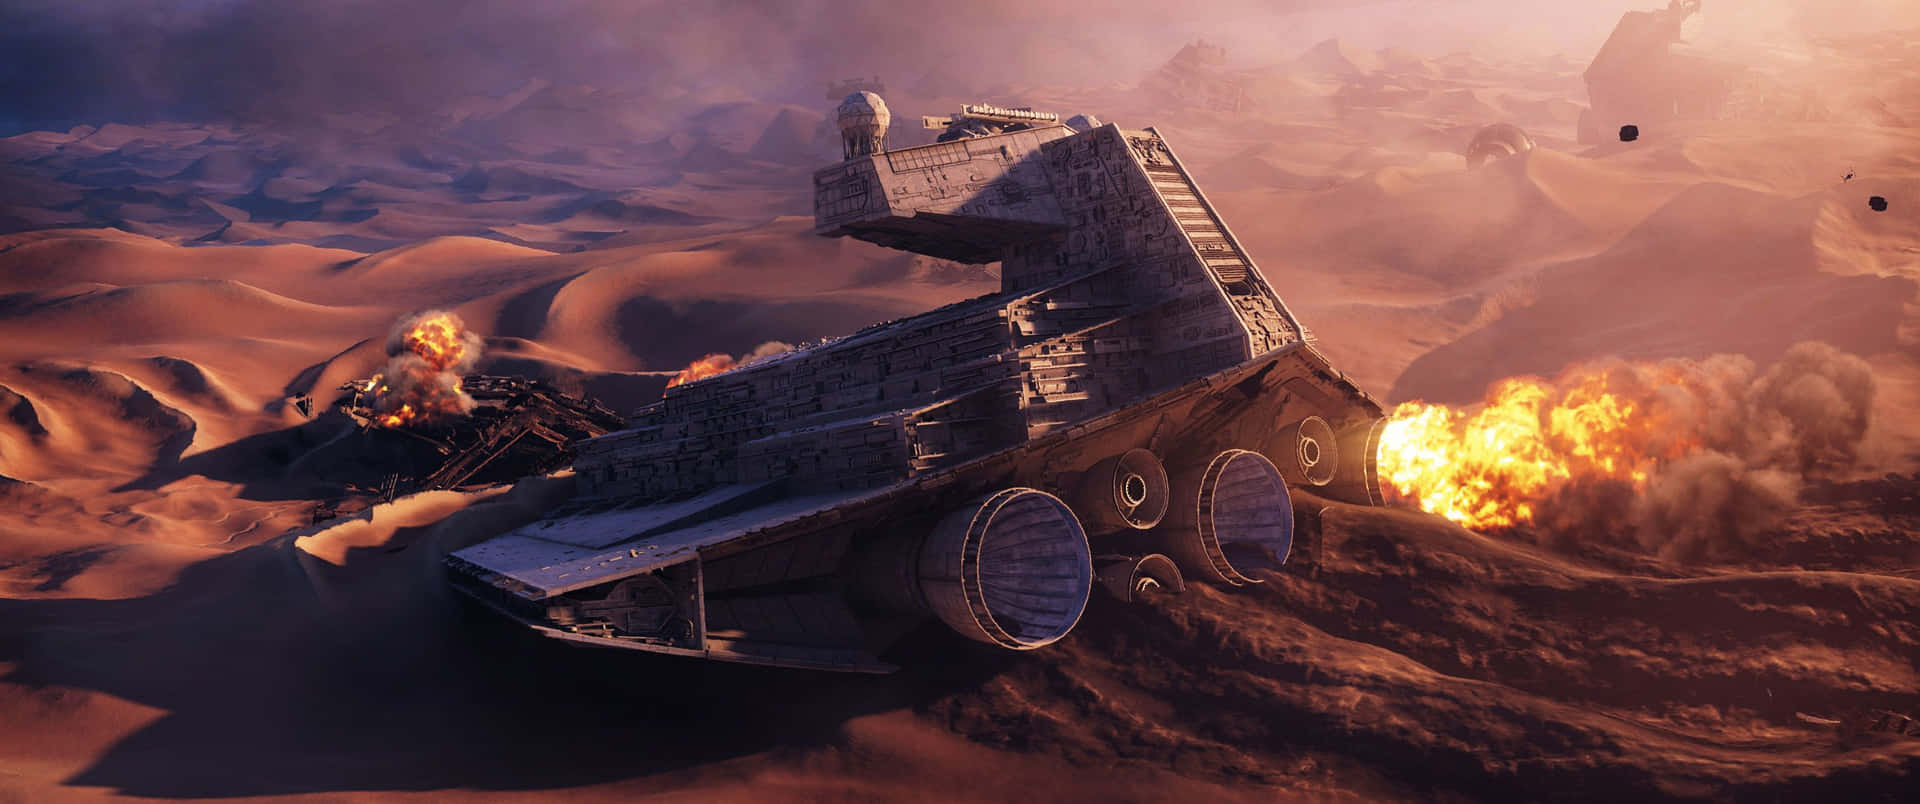 Star Wars Battlefront 2 Screenshots Wallpaper